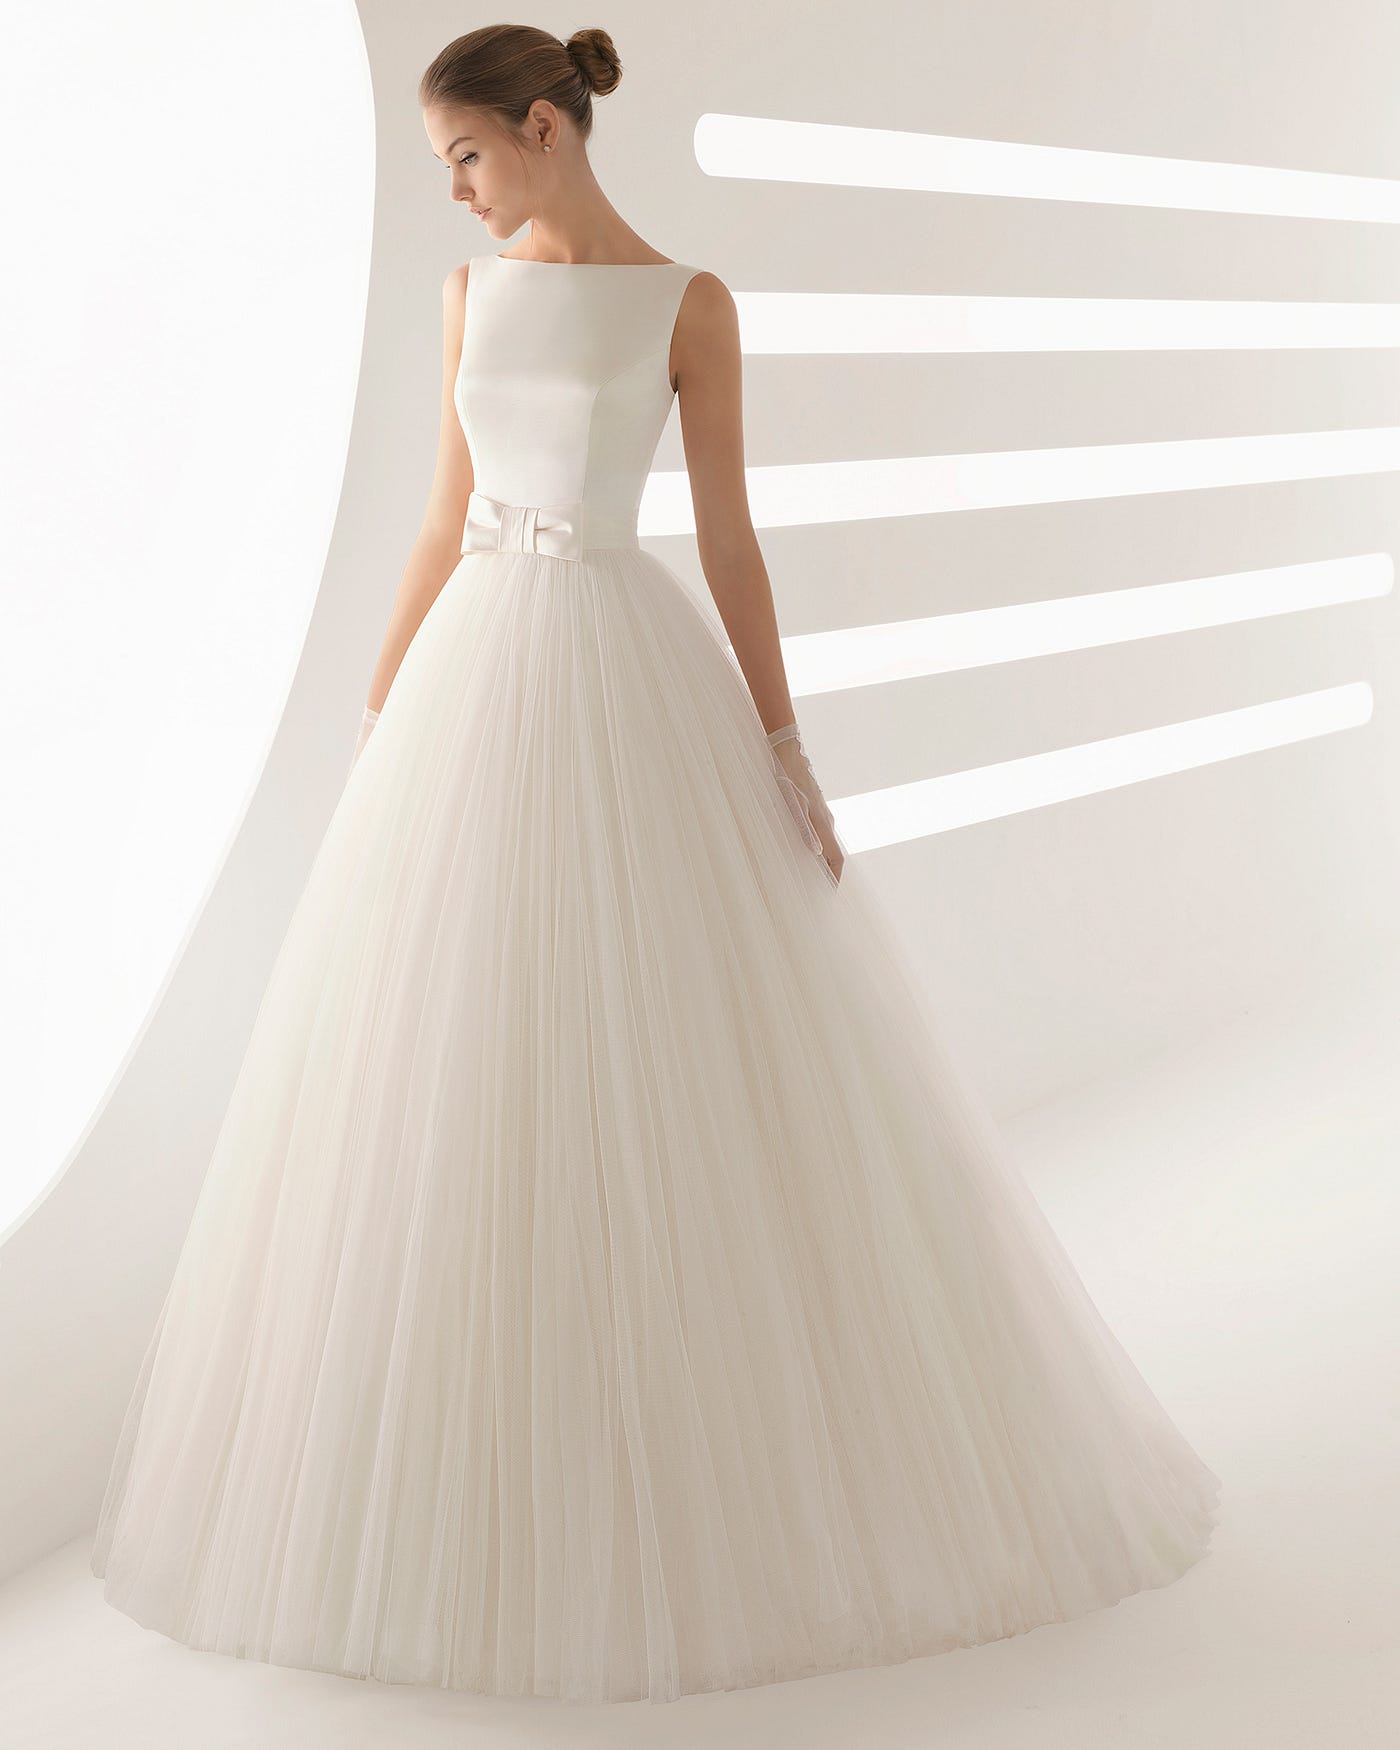 Vestido de noiva com saia de tule | by MKT Casamarela | Casamarela  Inspiration